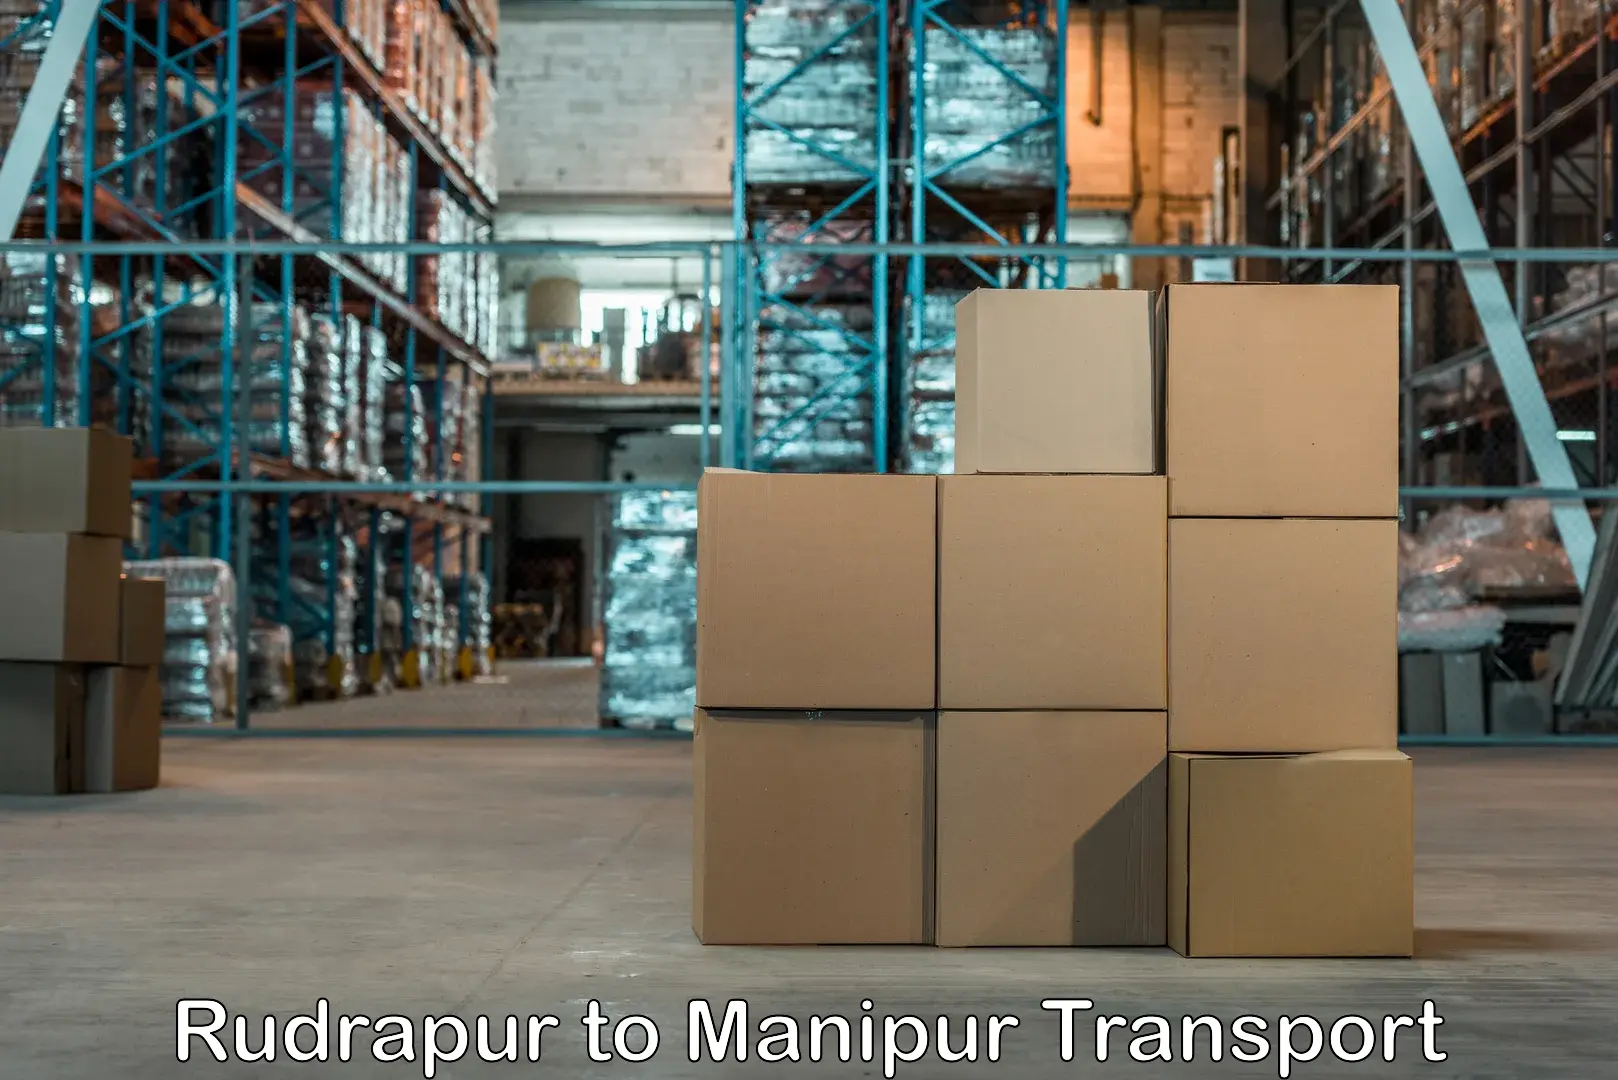 Road transport online services Rudrapur to Churachandpur